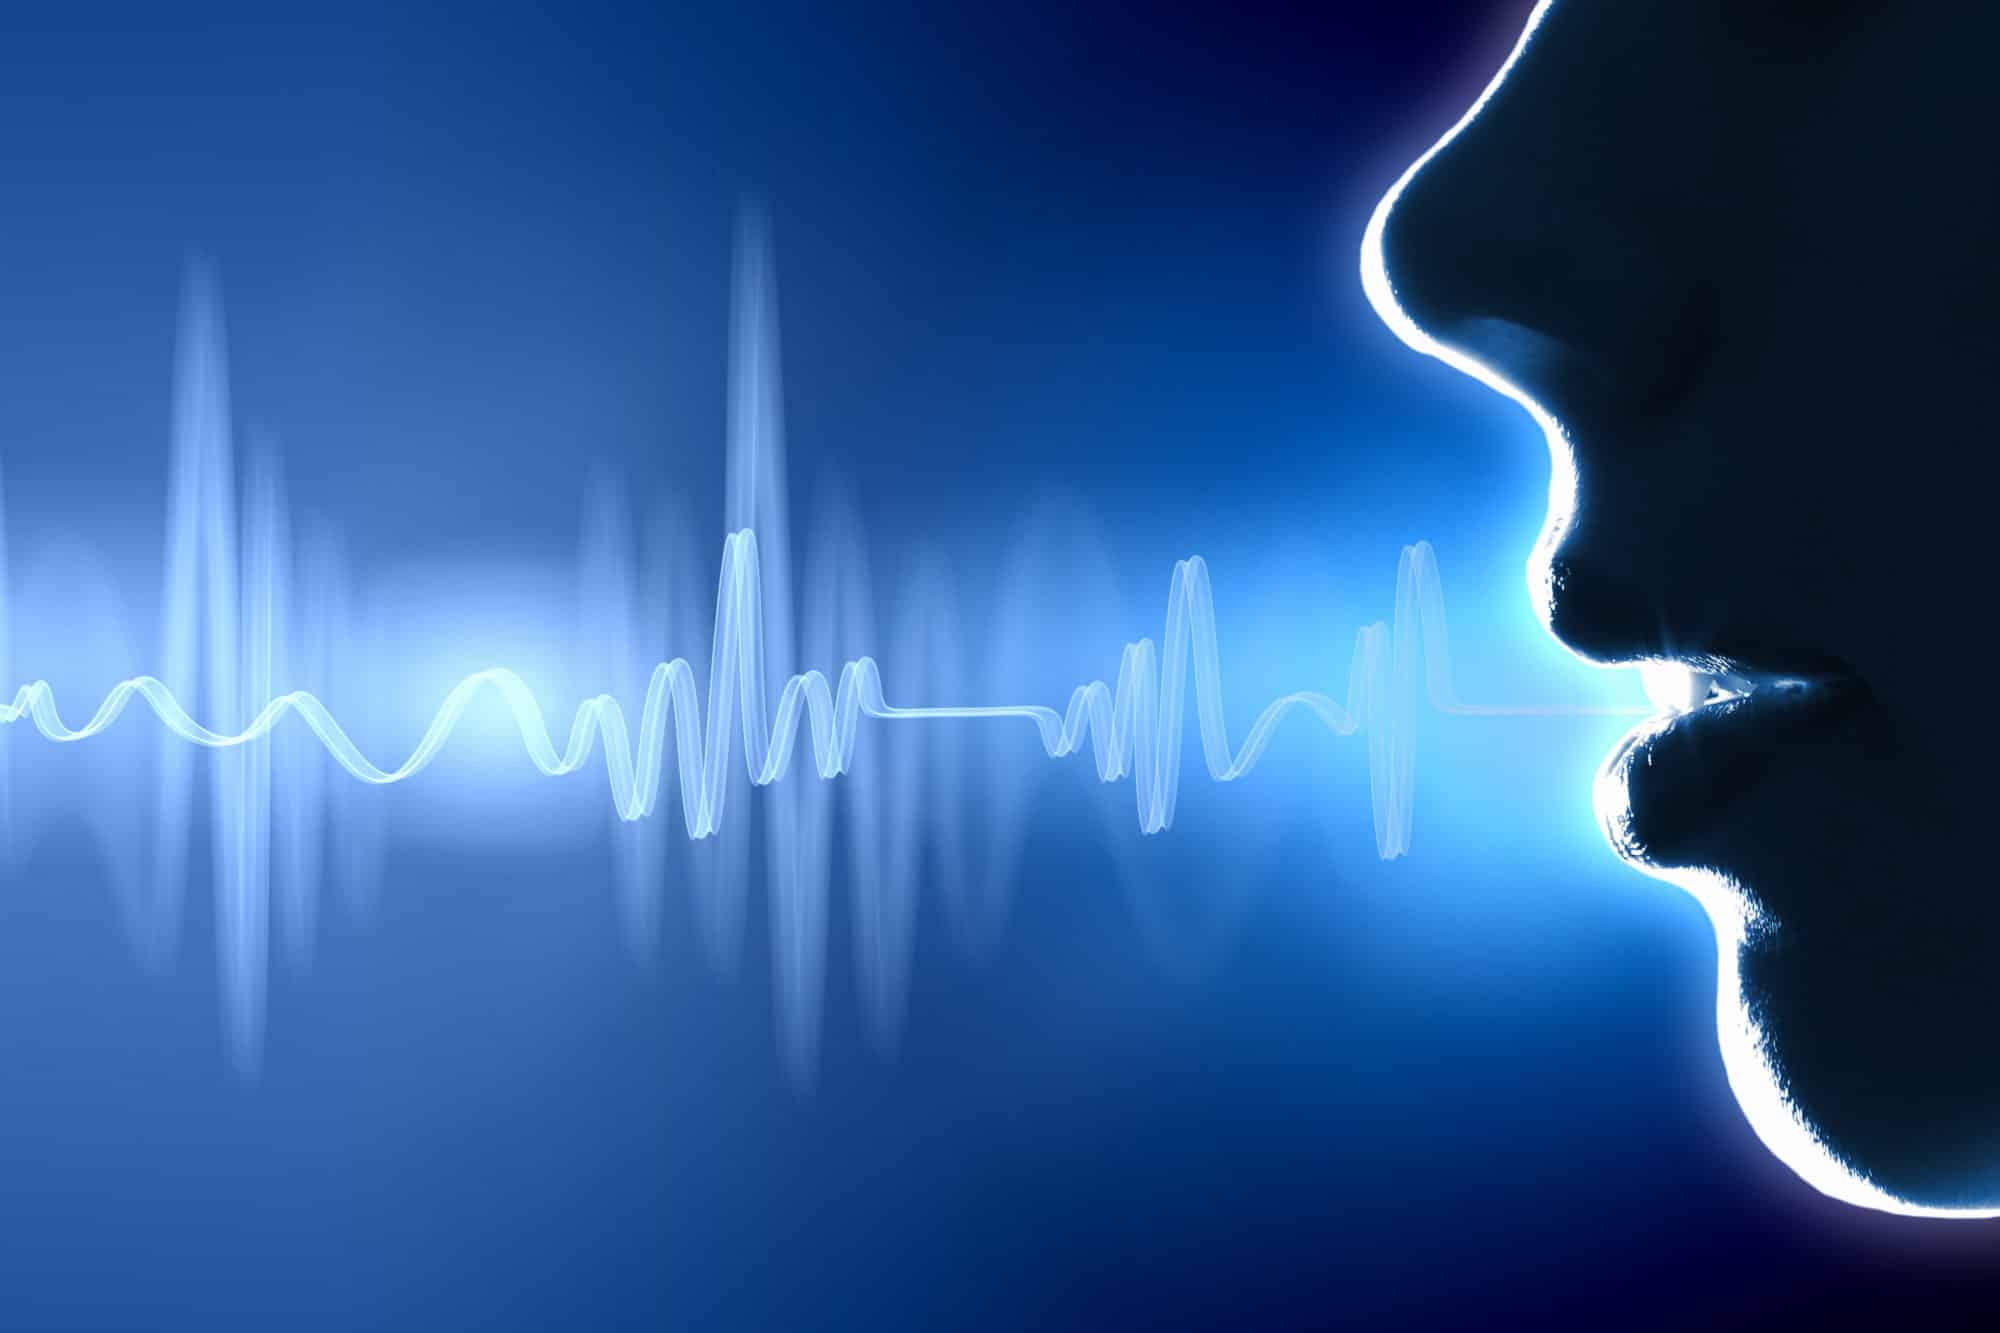 Tutoriel pour modifier la vitesse de parole d'Alexa sur Amazon Echo